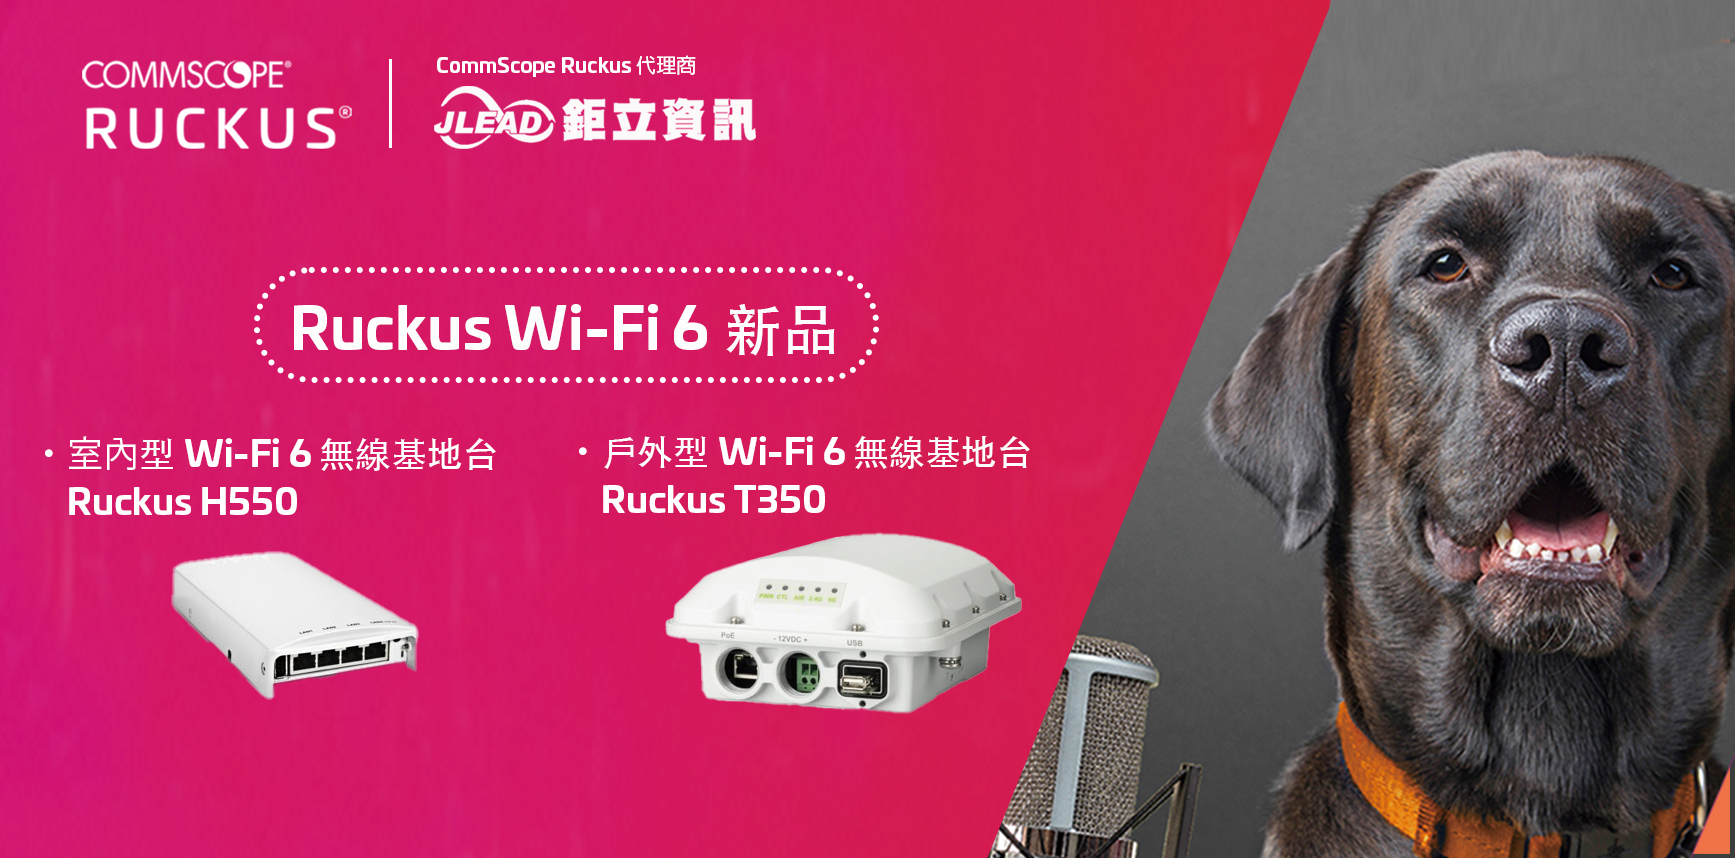 康普 CommScope 針對飯店、智慧空間、多住戶單元（MDU）推出 RUCKUS Wi-Fi 6 產品組合